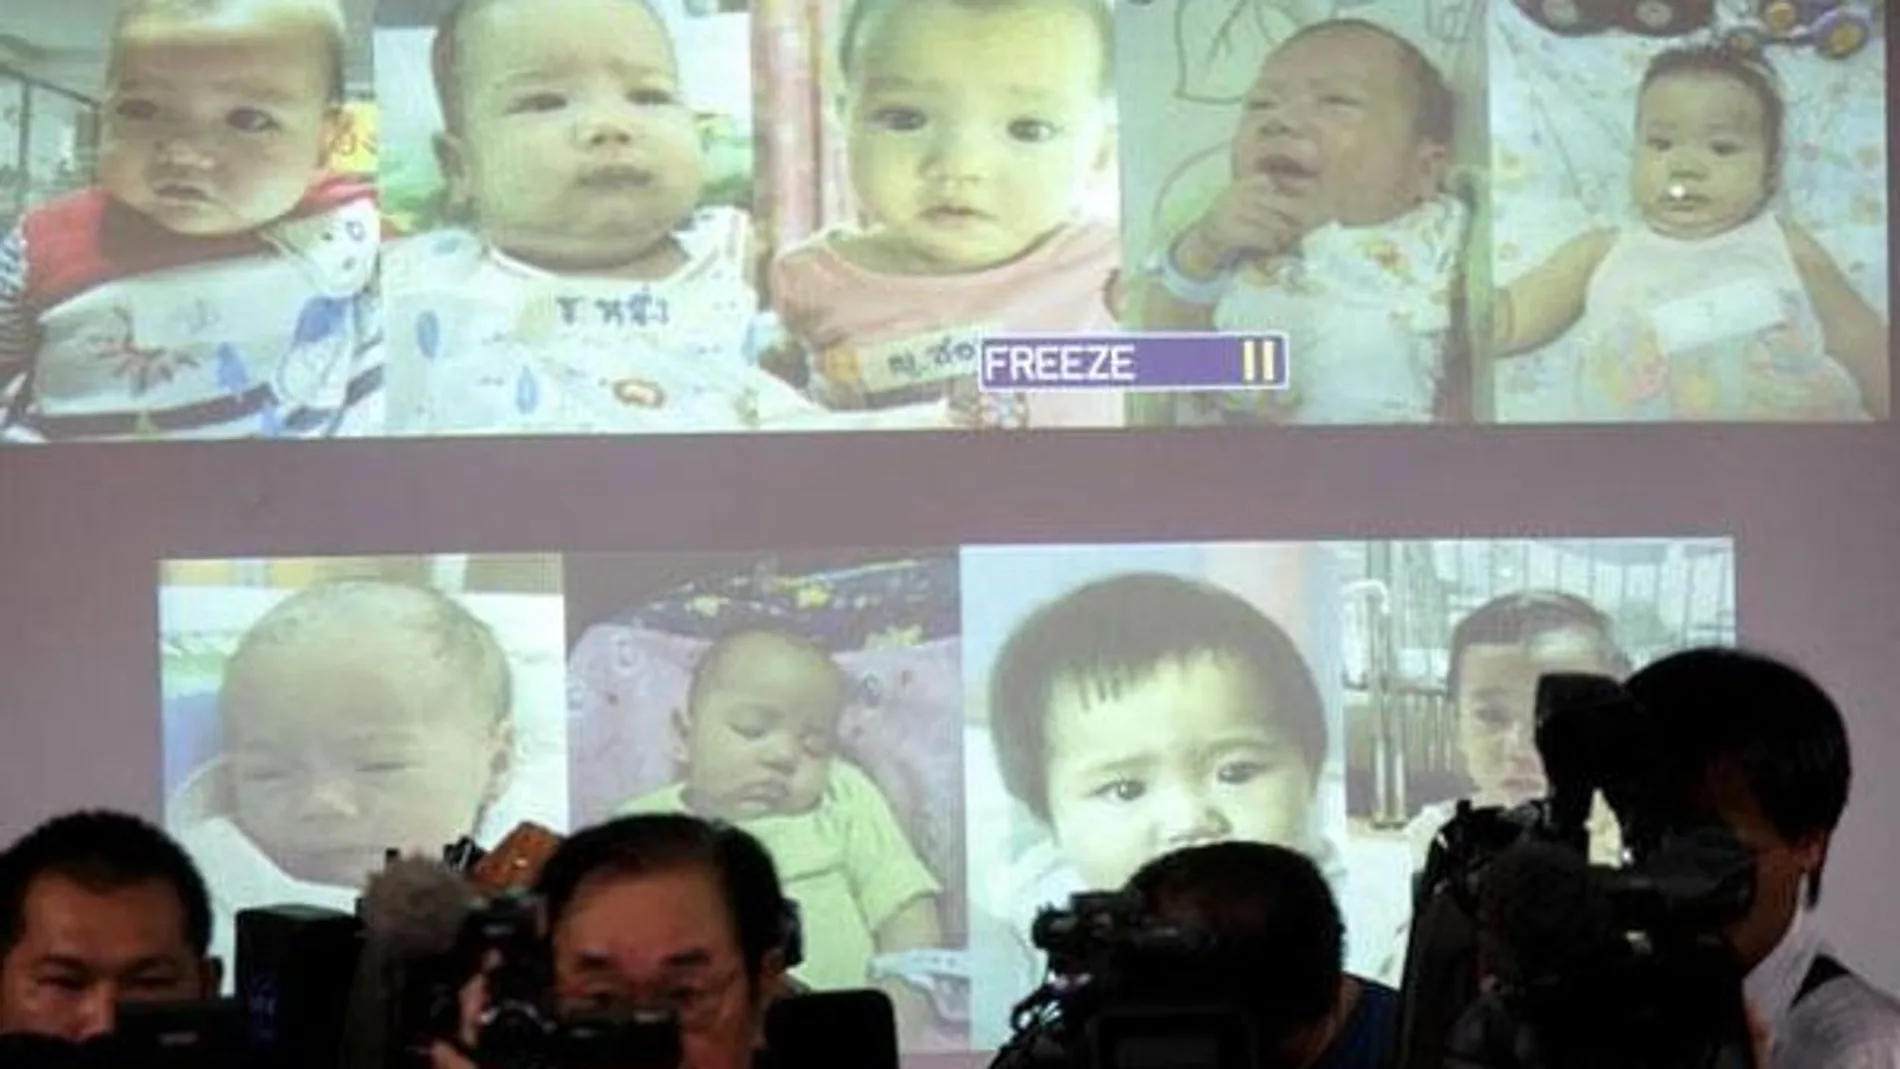 Imagen de los niños mostrada durante una rueda de prensa